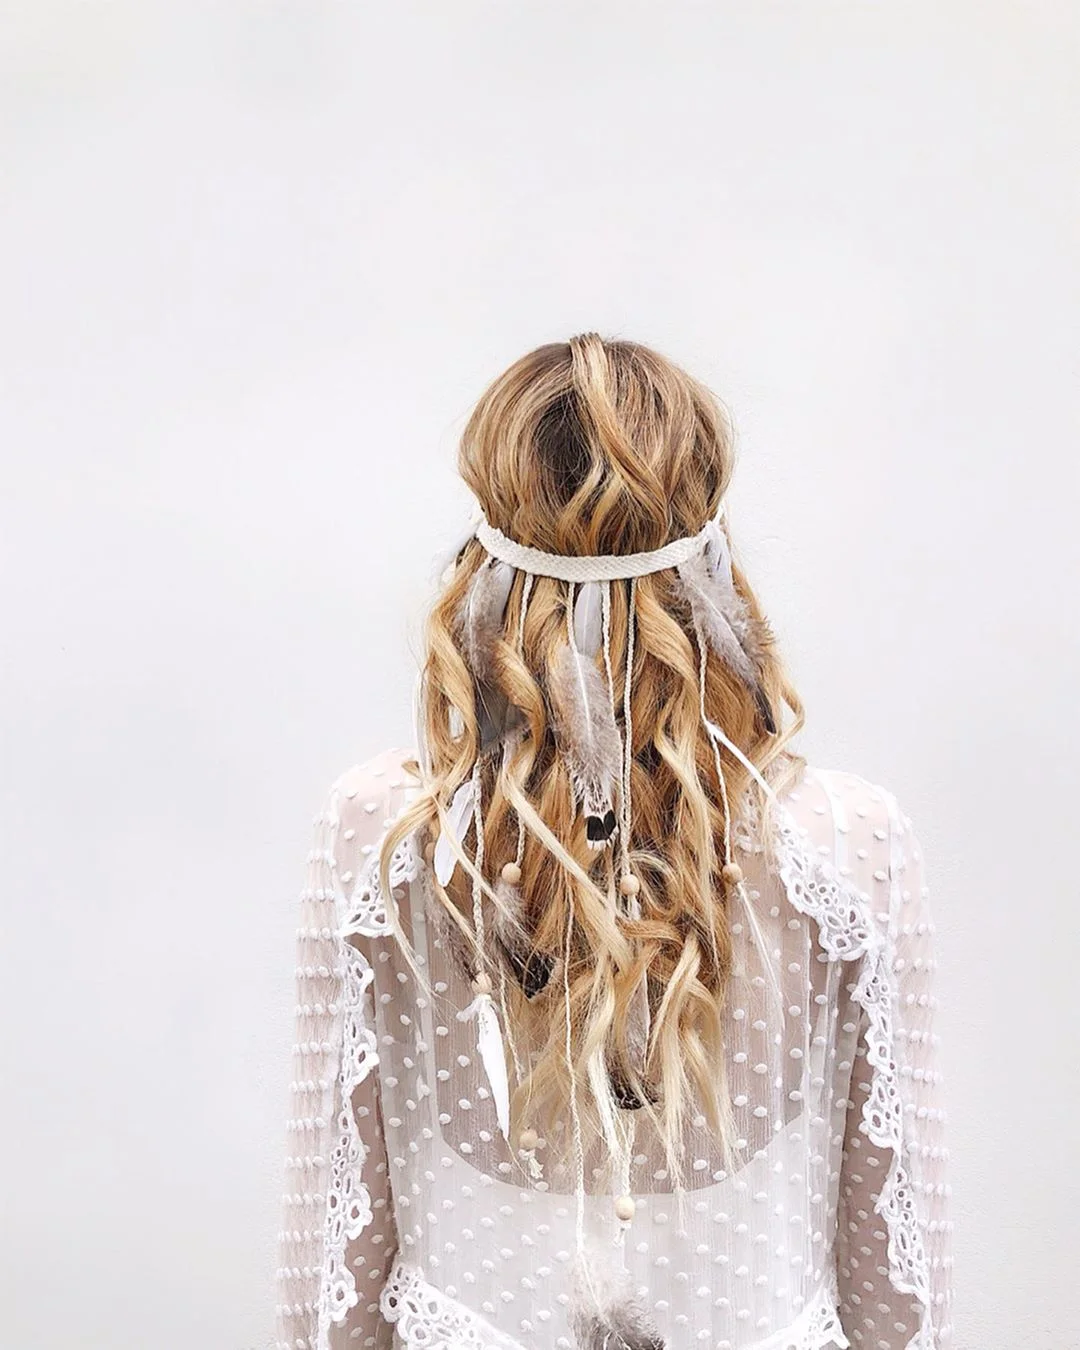 Весільні зачіски 2019: фото кращих варіантів укладок для нареченої - фото 438871